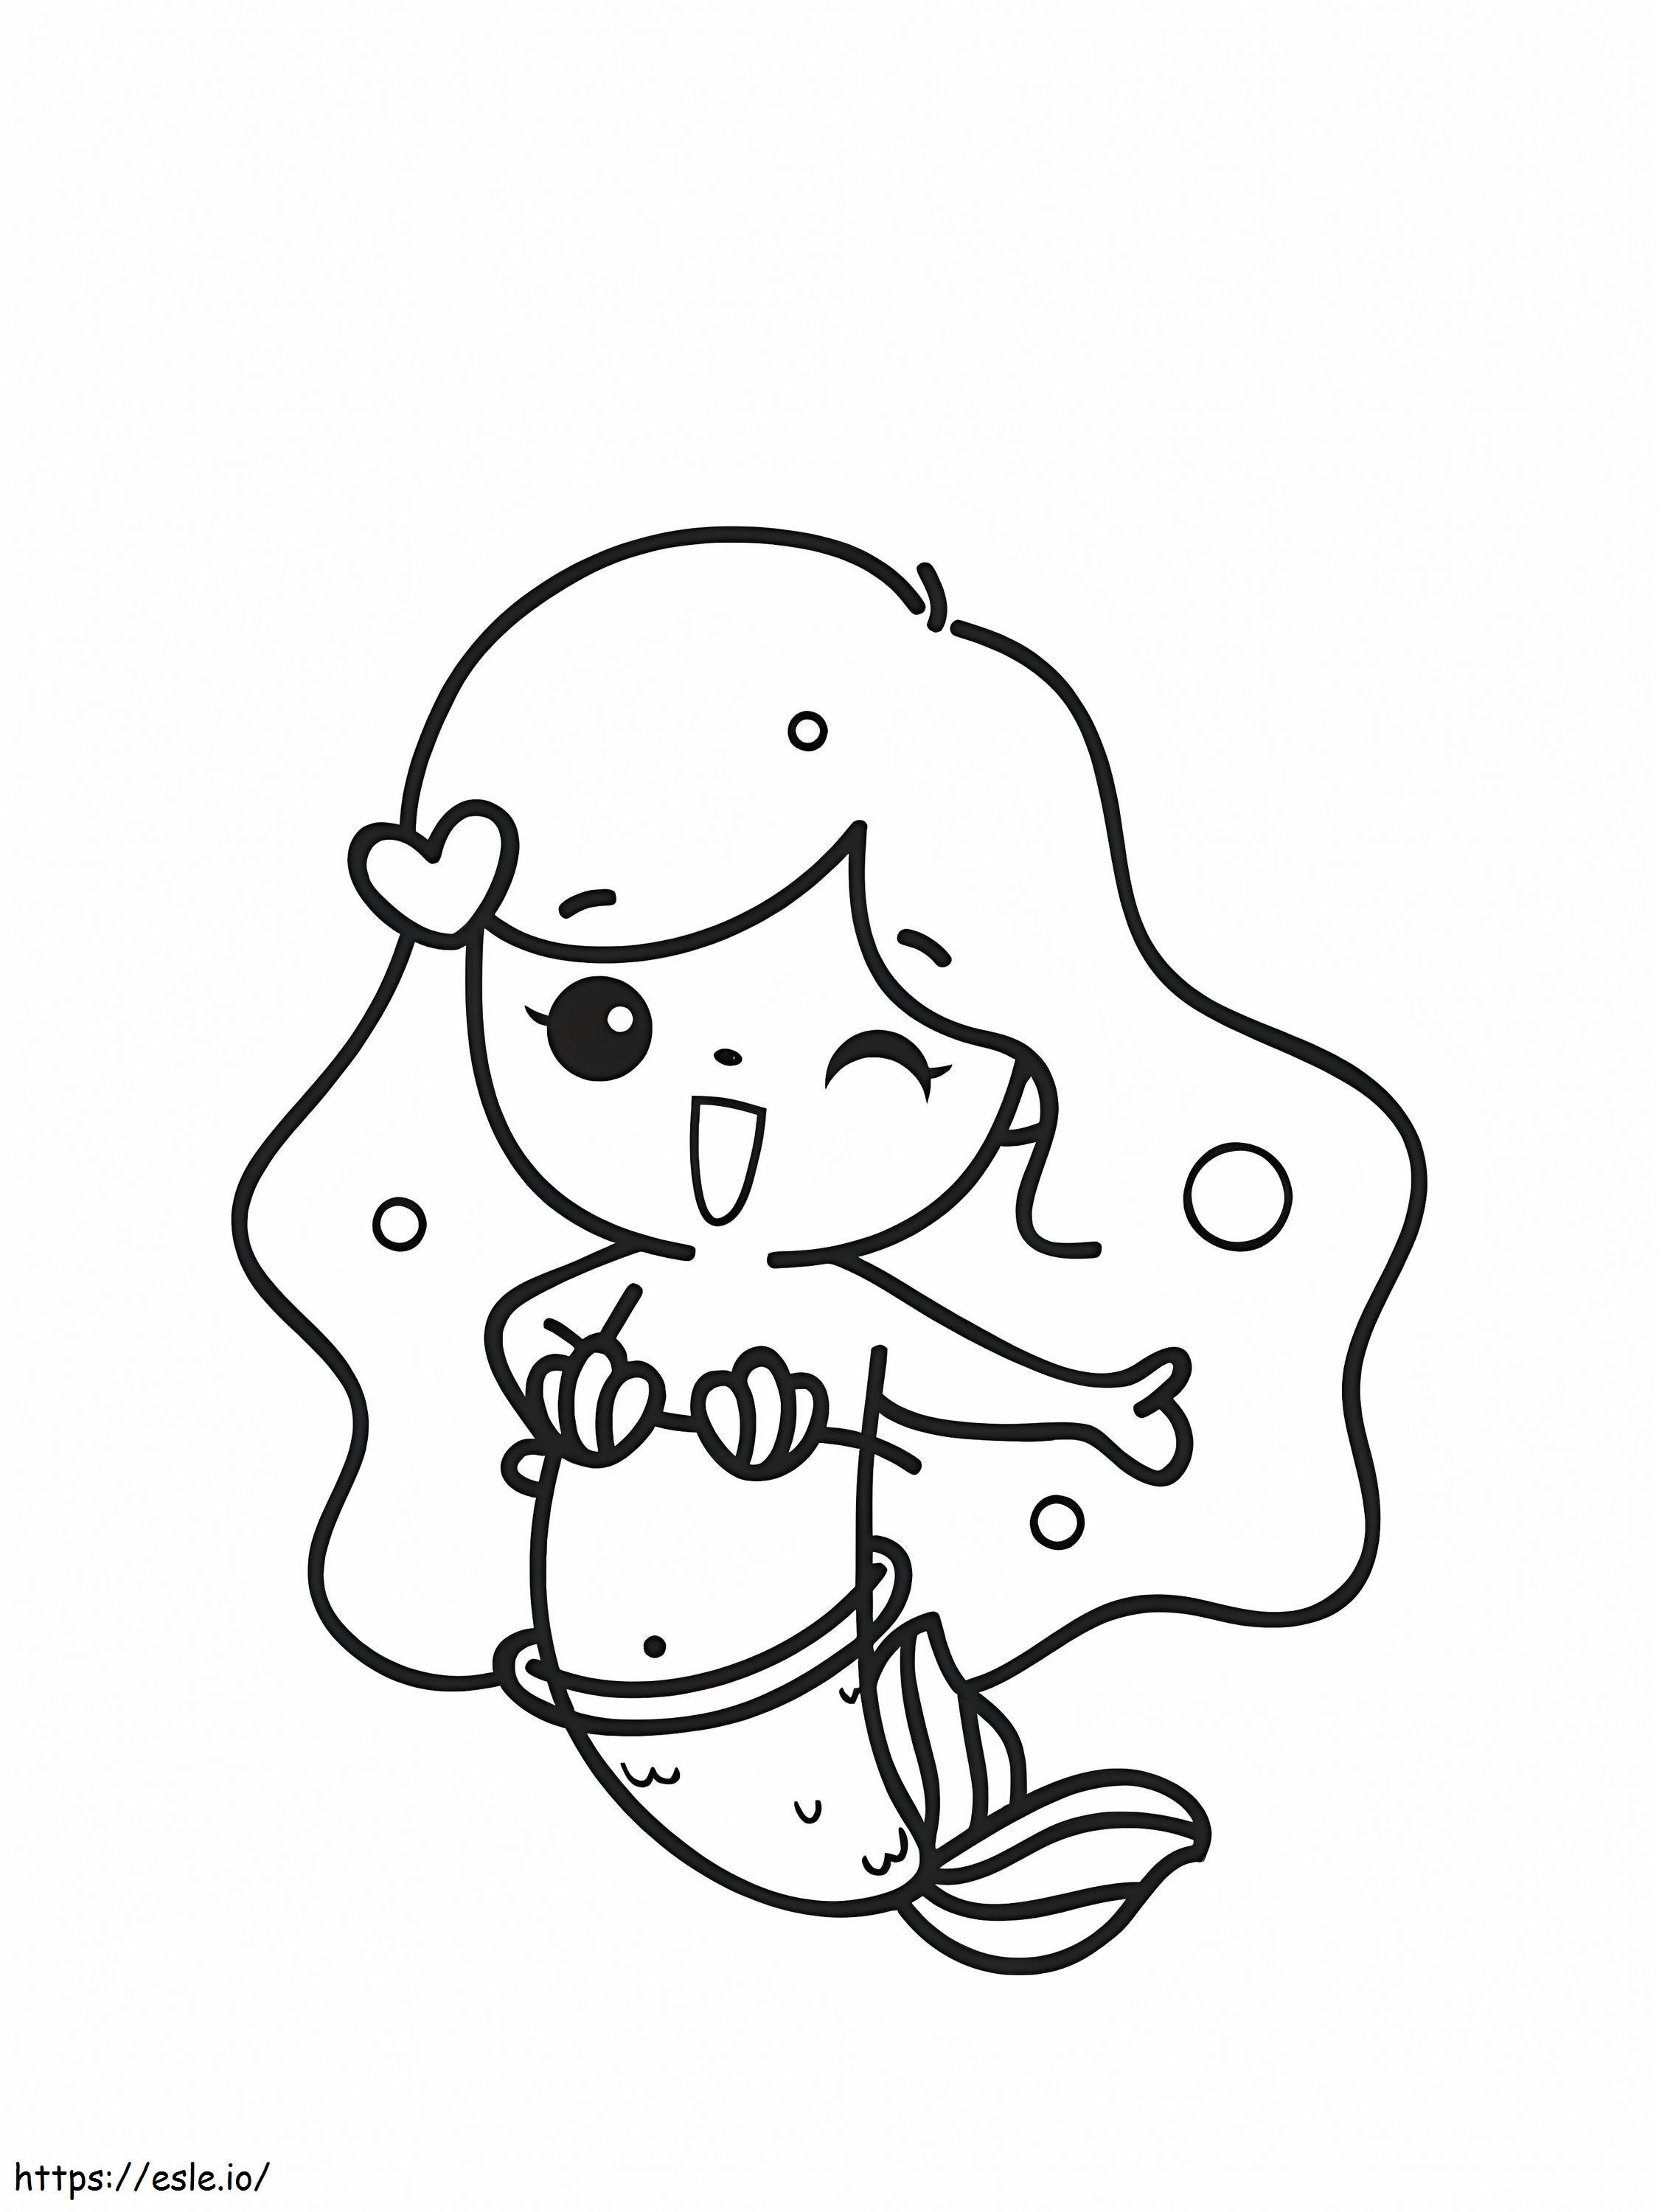 Printable Mermaid coloring page